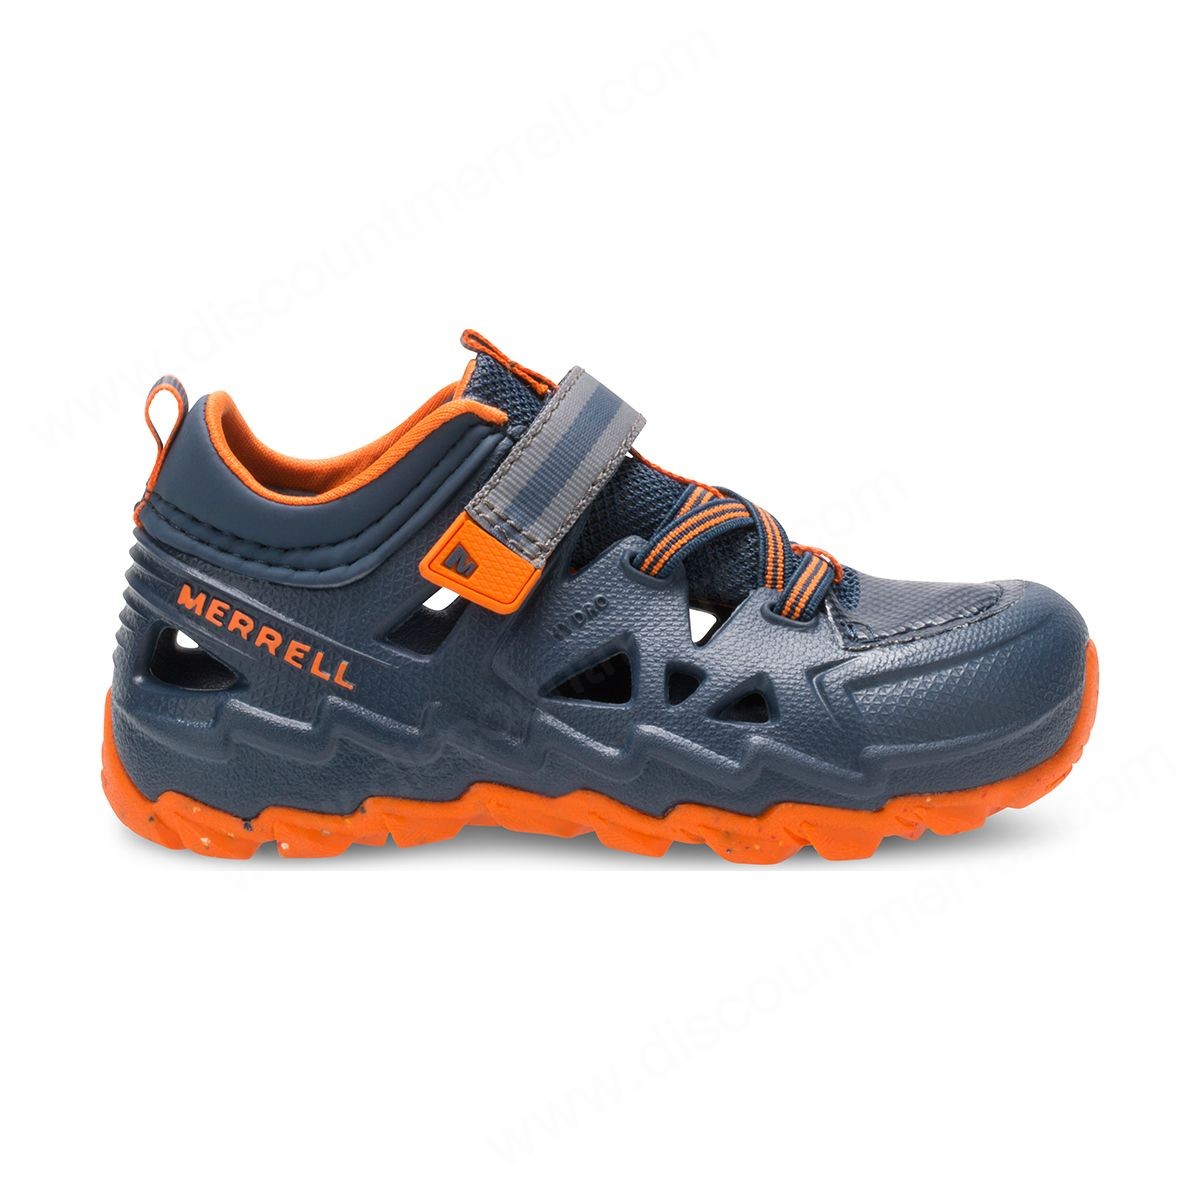 Merrell Little Kid's Hydro Junior . Sneakers Sandal Navy/orange - -2